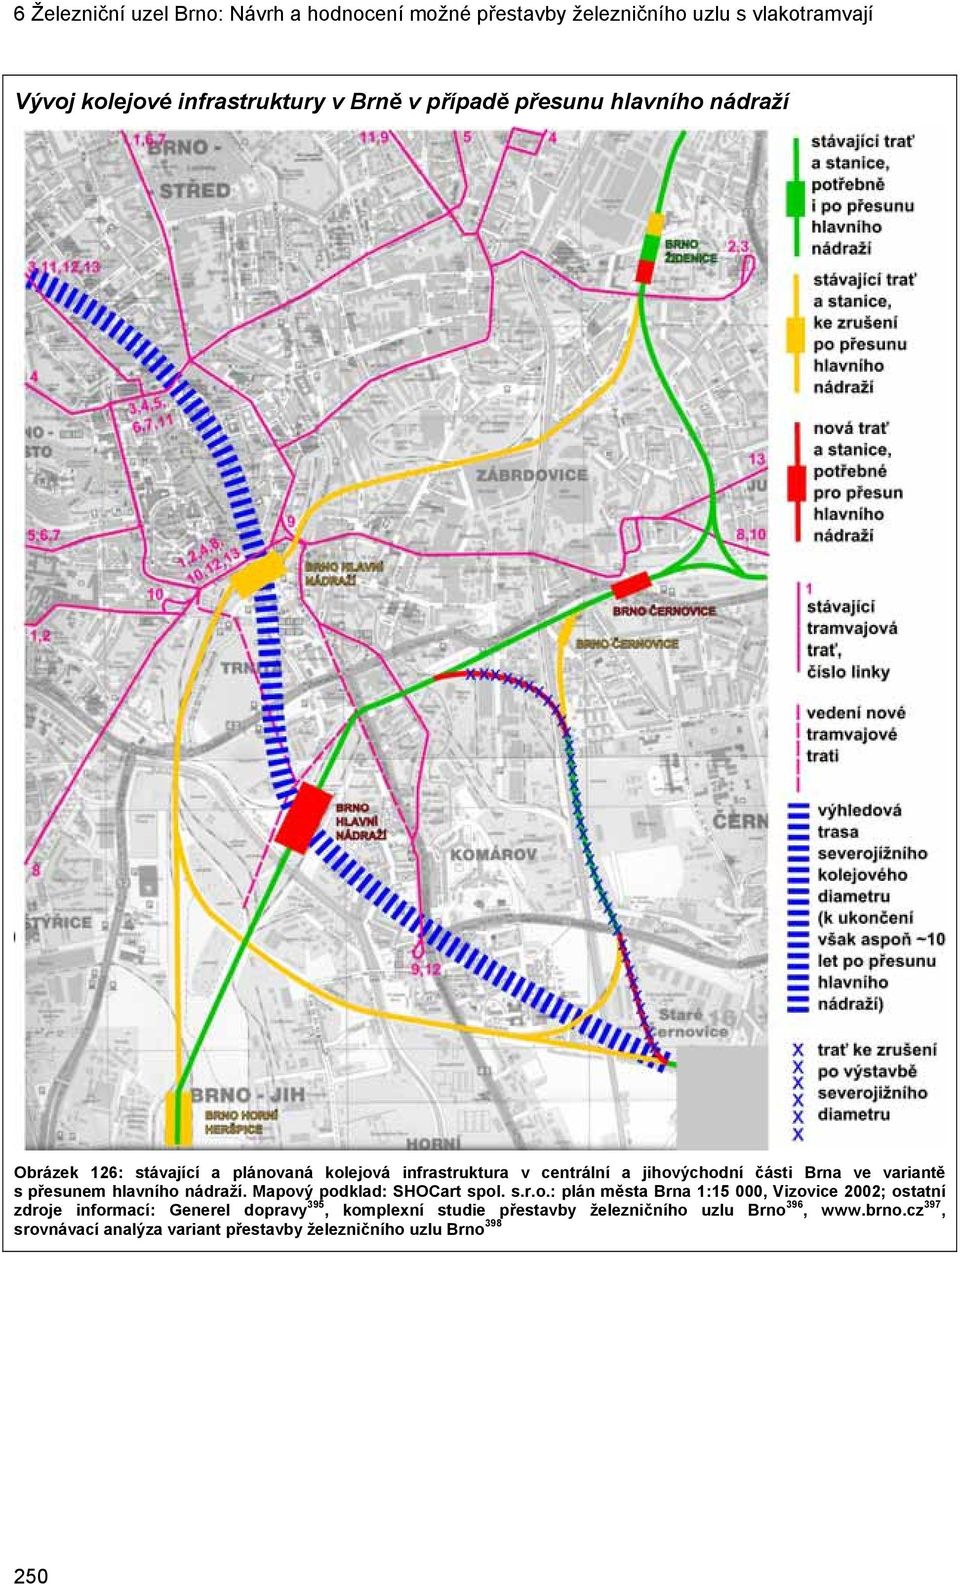 Mapový podklad: SHOCart spol. s.r.o.: plán města Brna 1:15 000, Vizovice 2002; ostatní zdroje informací: Generel